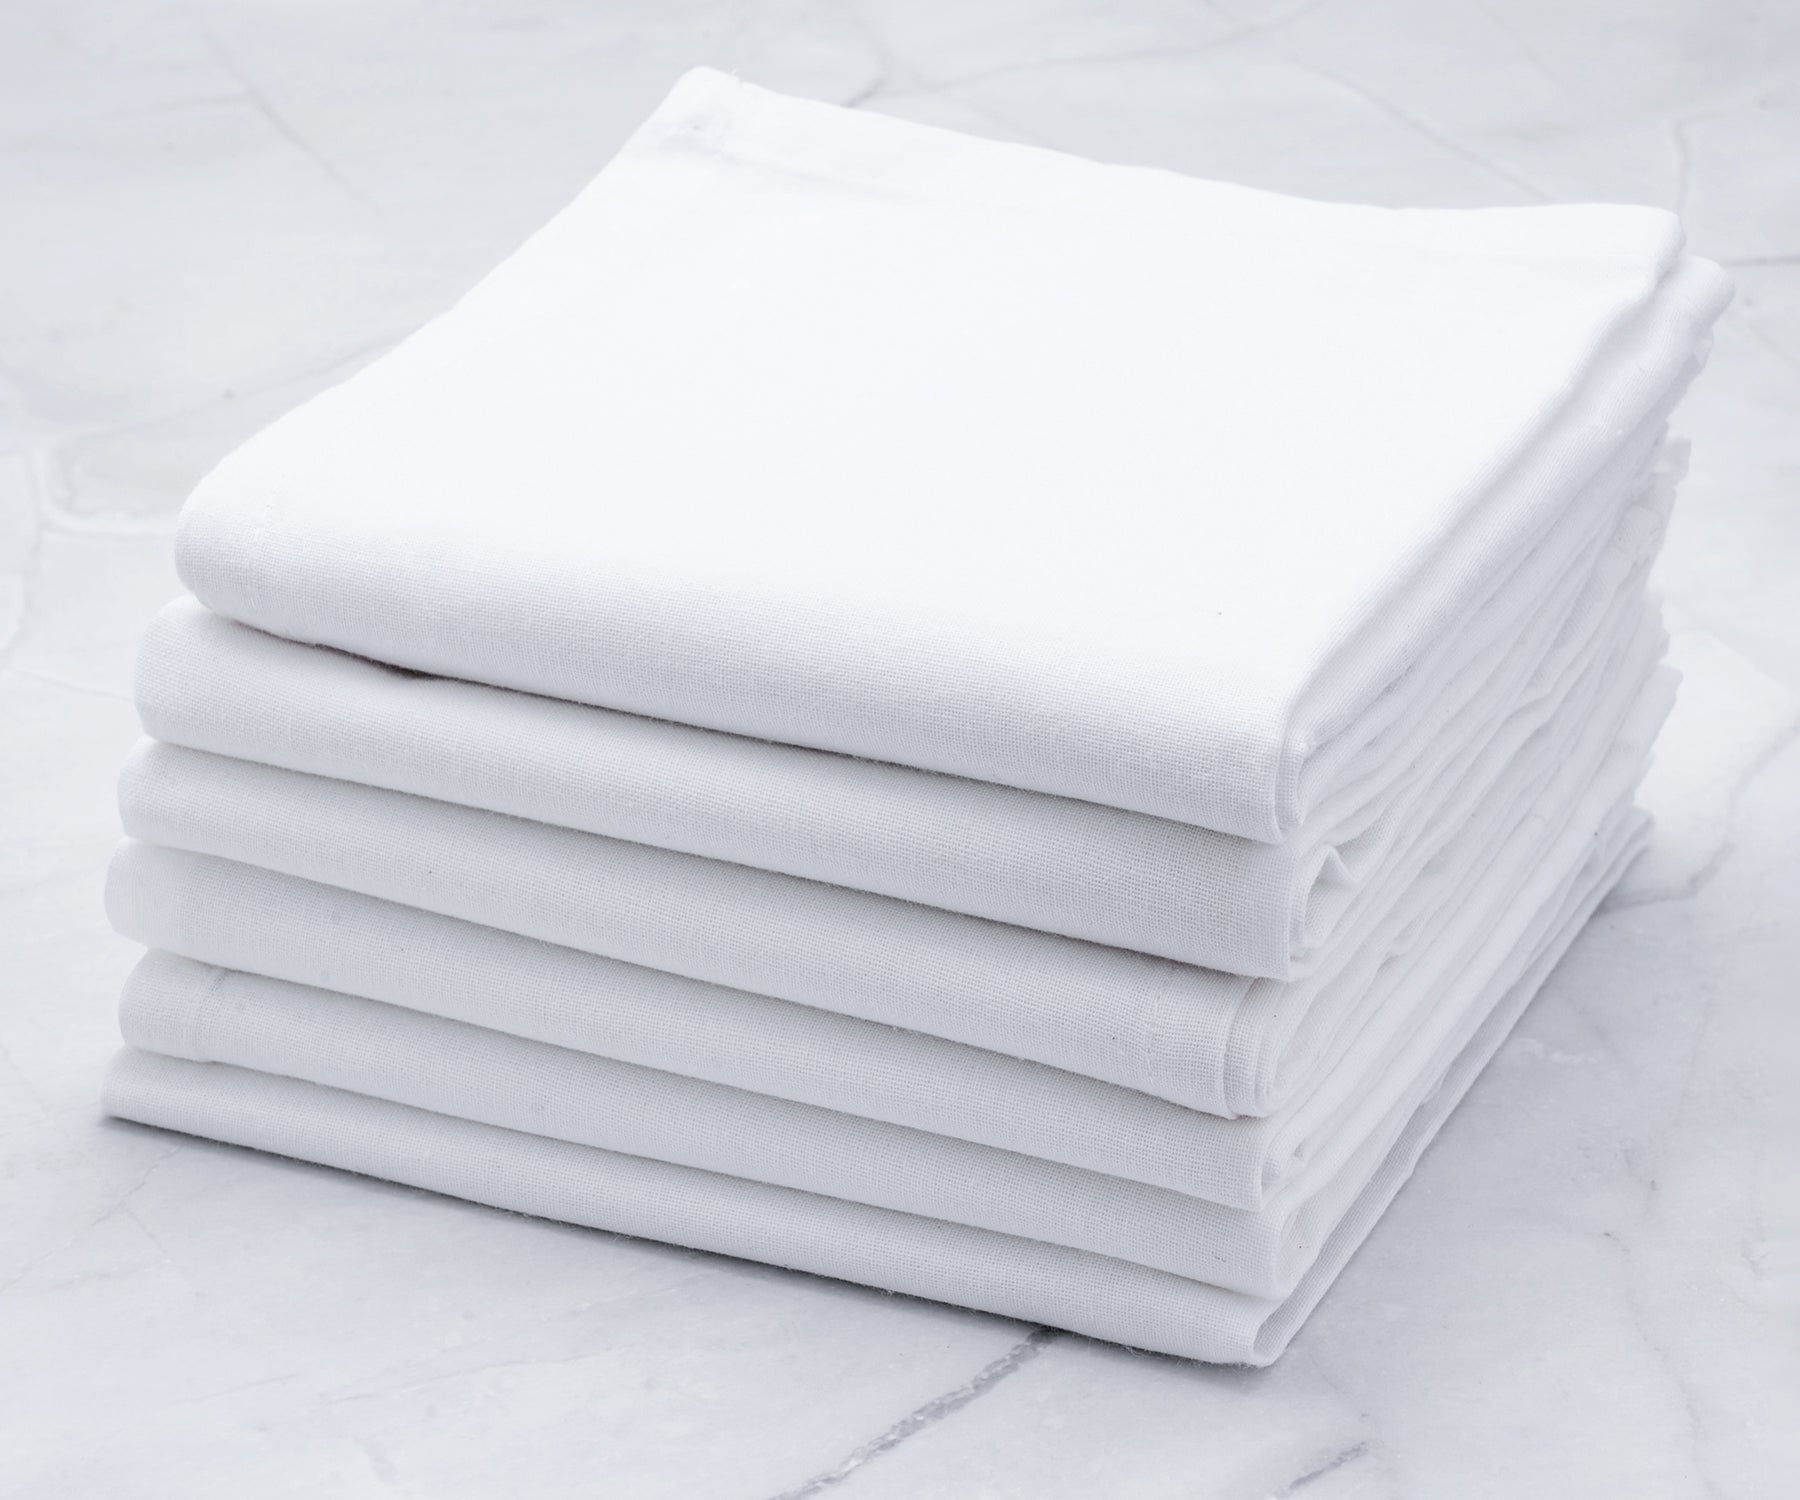 linen flour sack towels, flour sack kitchen dish towels set of 6, farmhouse kitchen towels cotton.